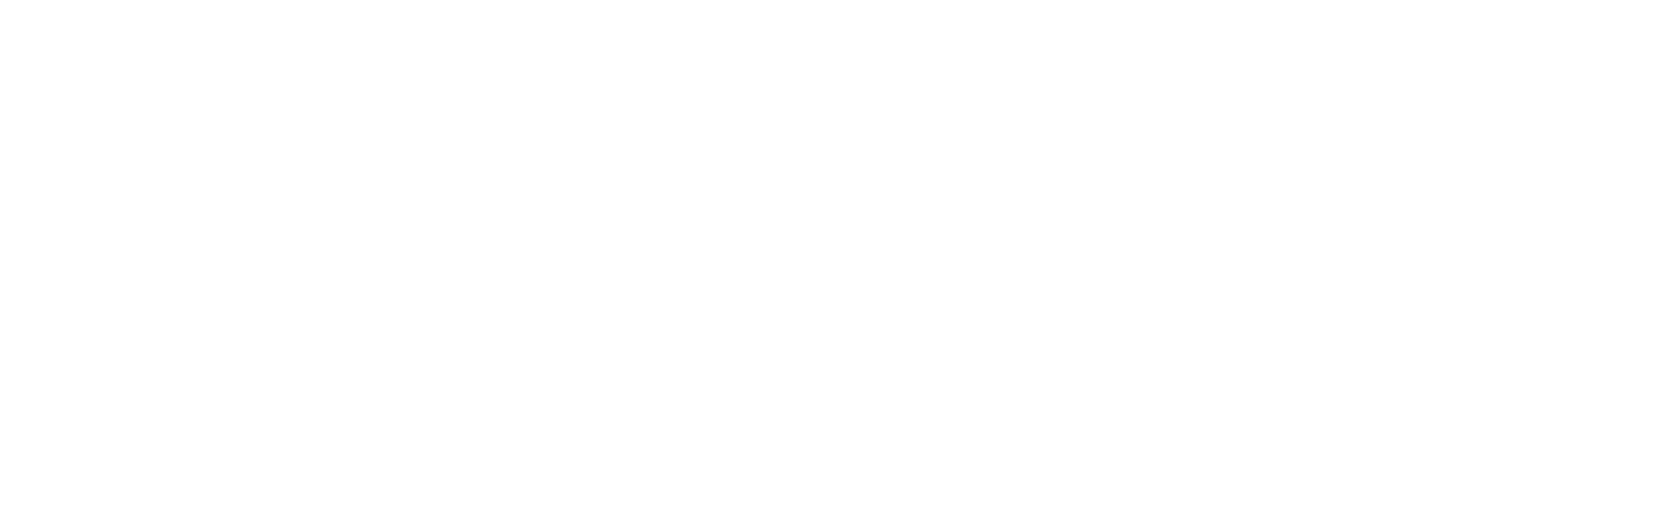 Westermann Bau GmbH - Projektlogo- Wohnpark am Ochsen